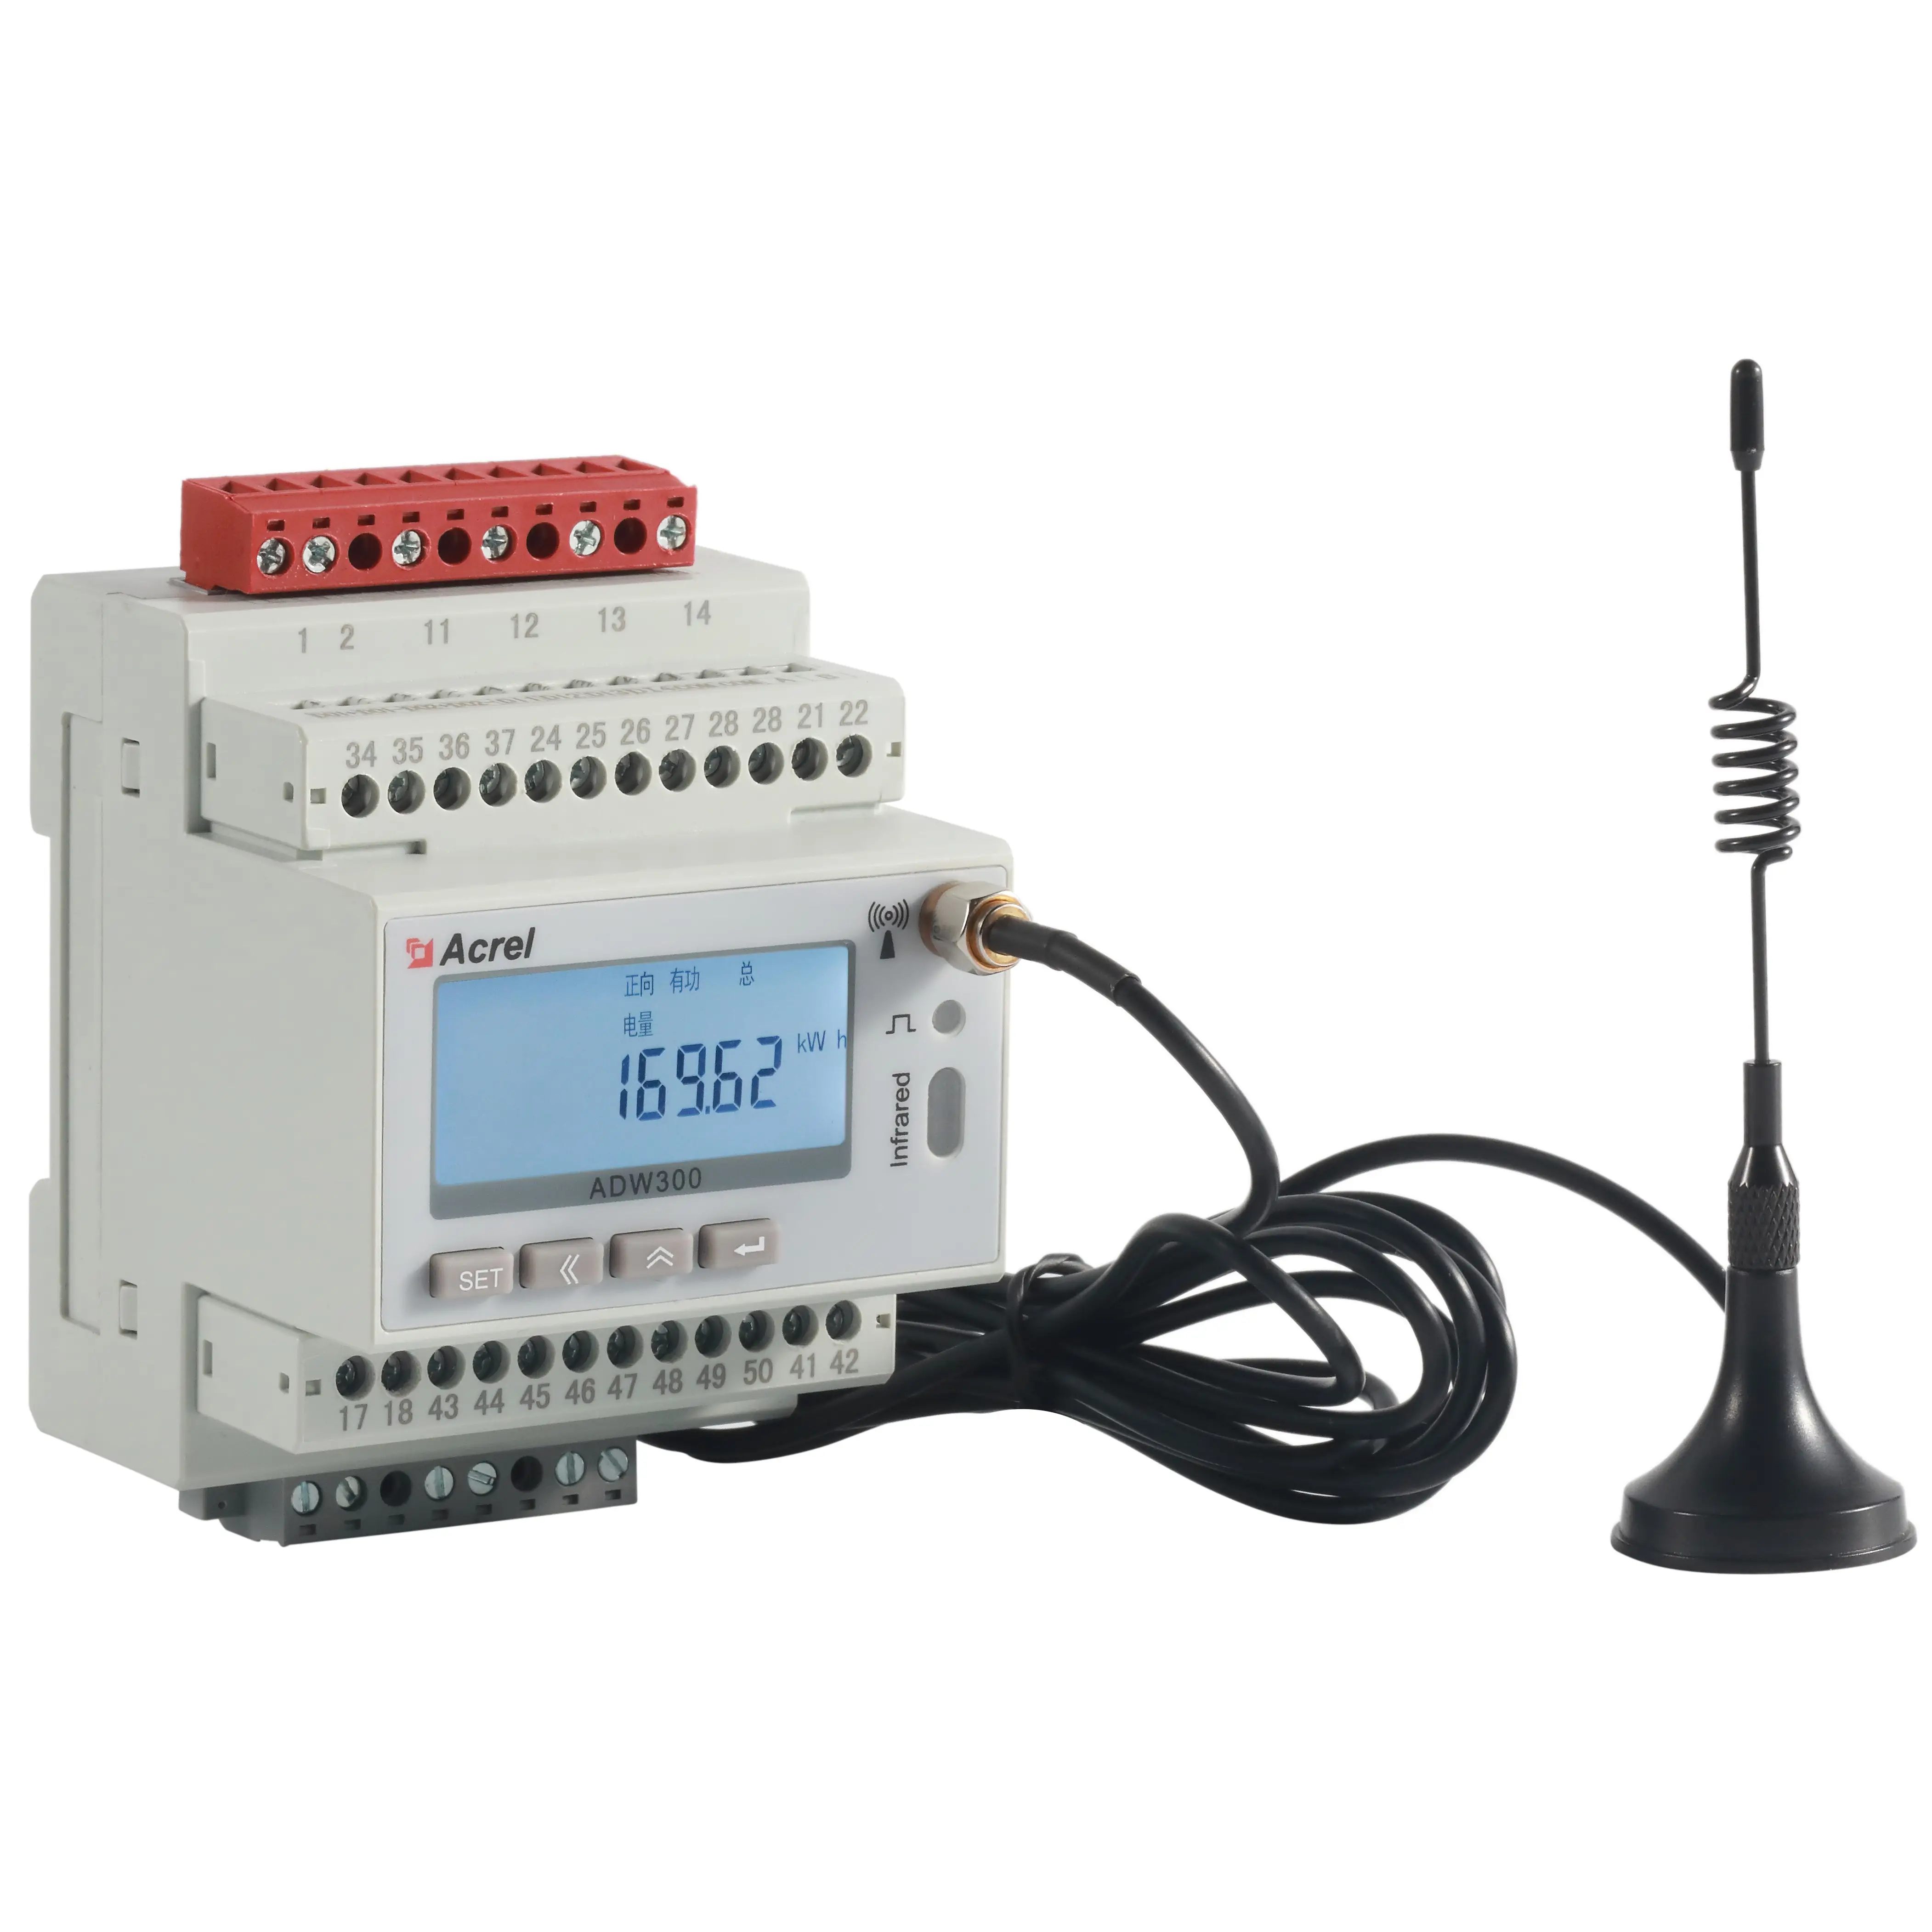 Acrel ADW300 RS485-Schnittstelle Dreiphasiger Wechselstrom-kWh-IOT-Stromzähler Aufzeichnung der Daten des letzten Monats Nennstrom 3x1(6)A AC